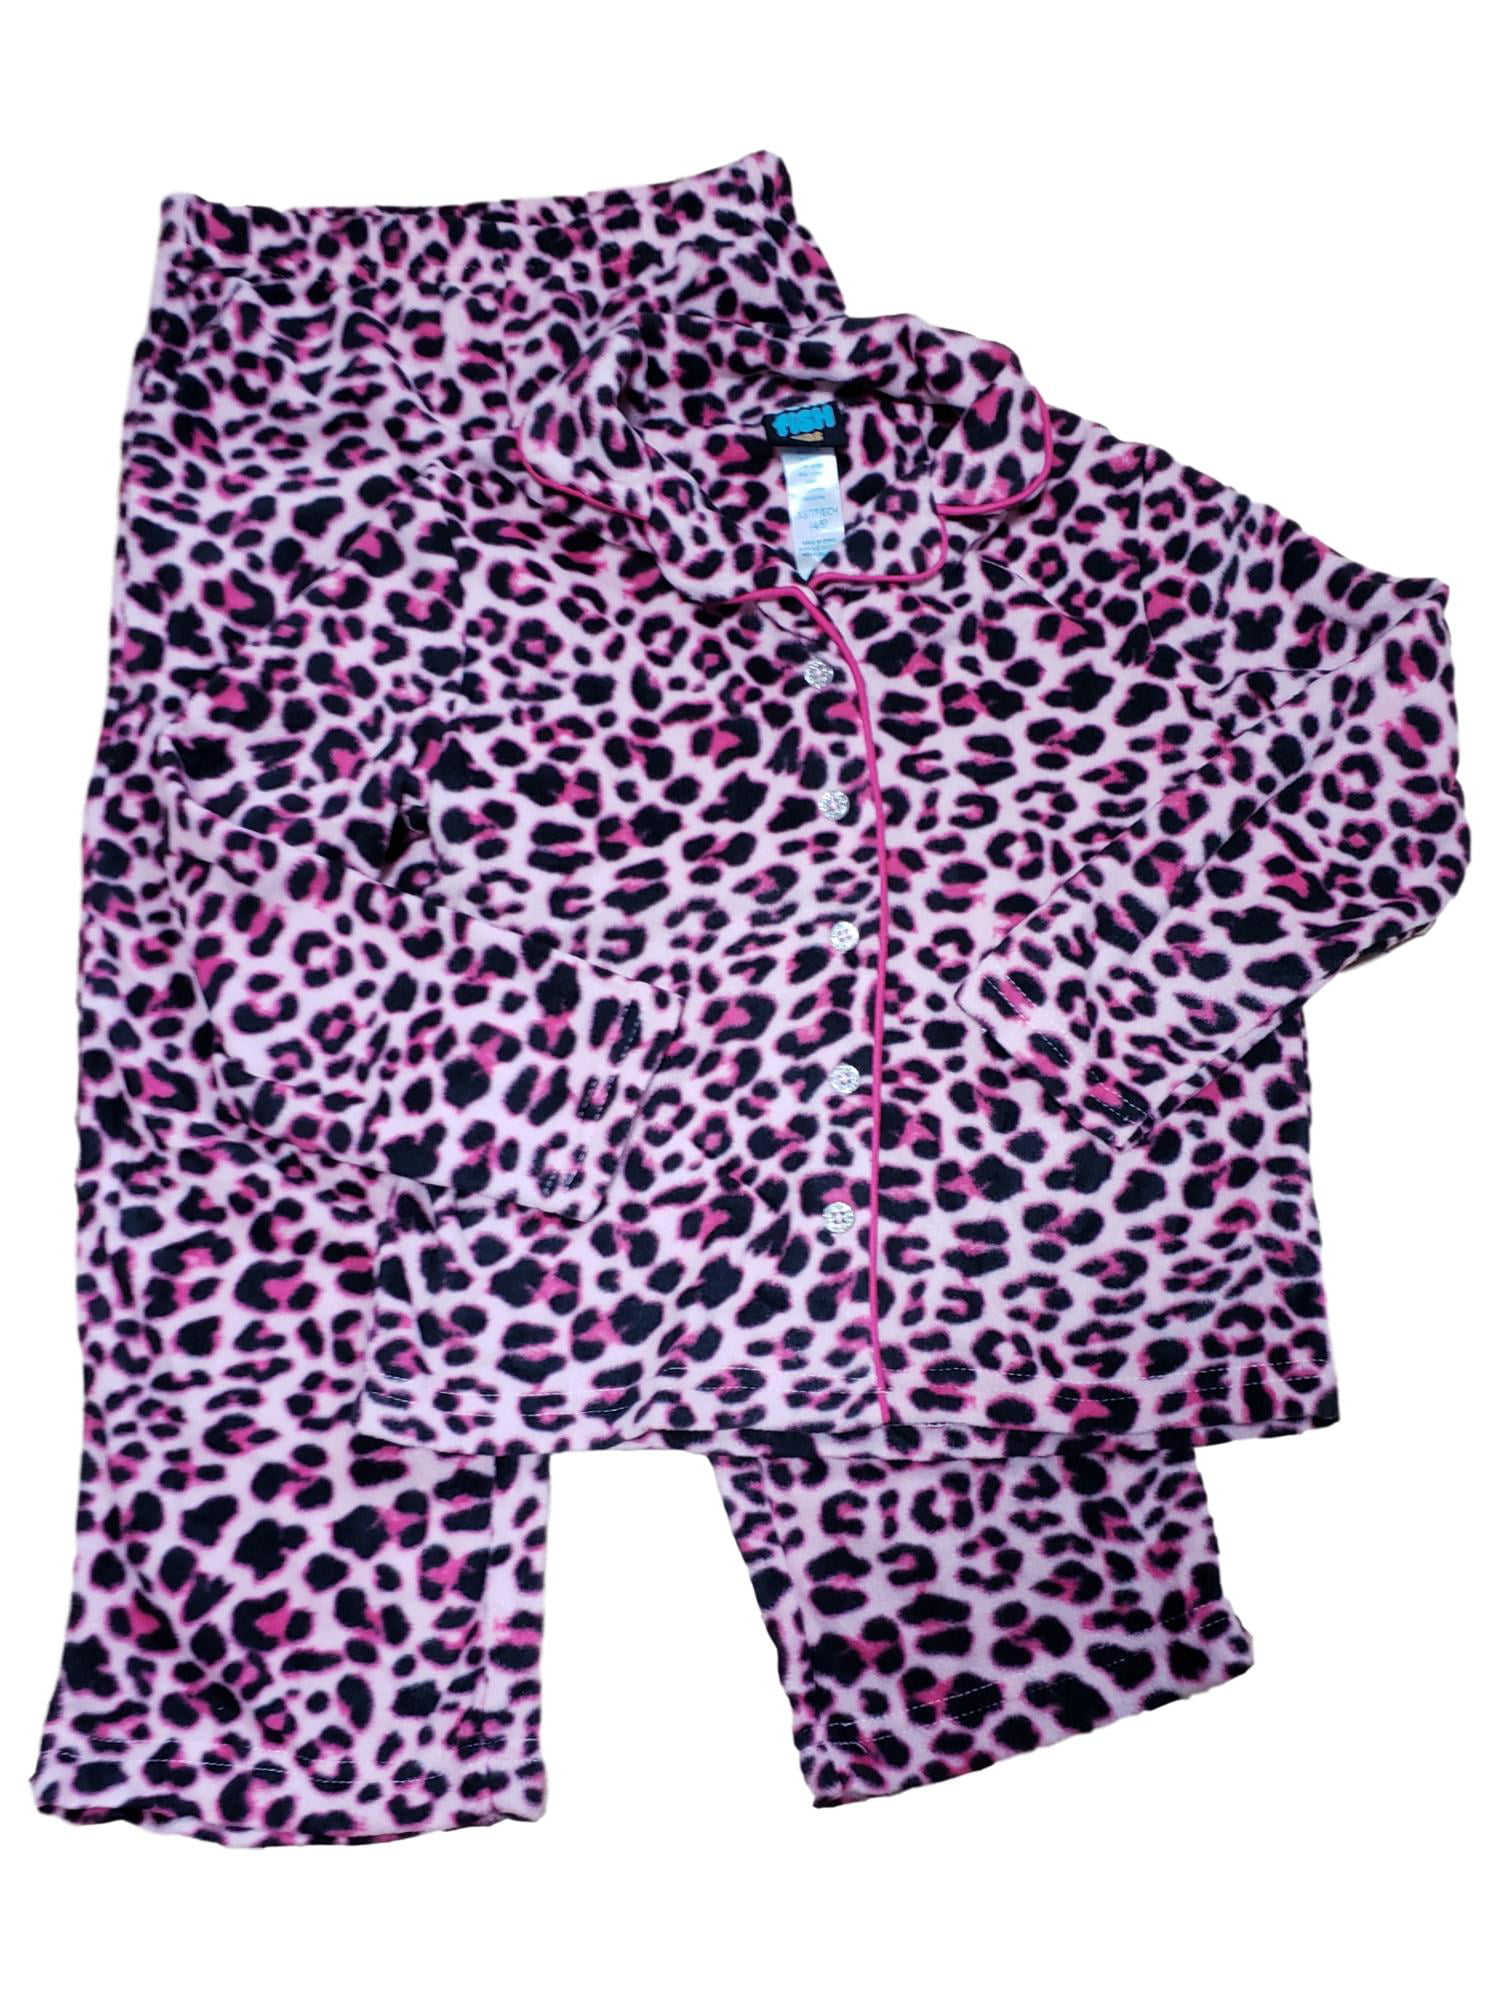 KISBINI Toddler Girls 2 Pcs Animal Print Sleepwear Pjs Pj Top & Bottom Set